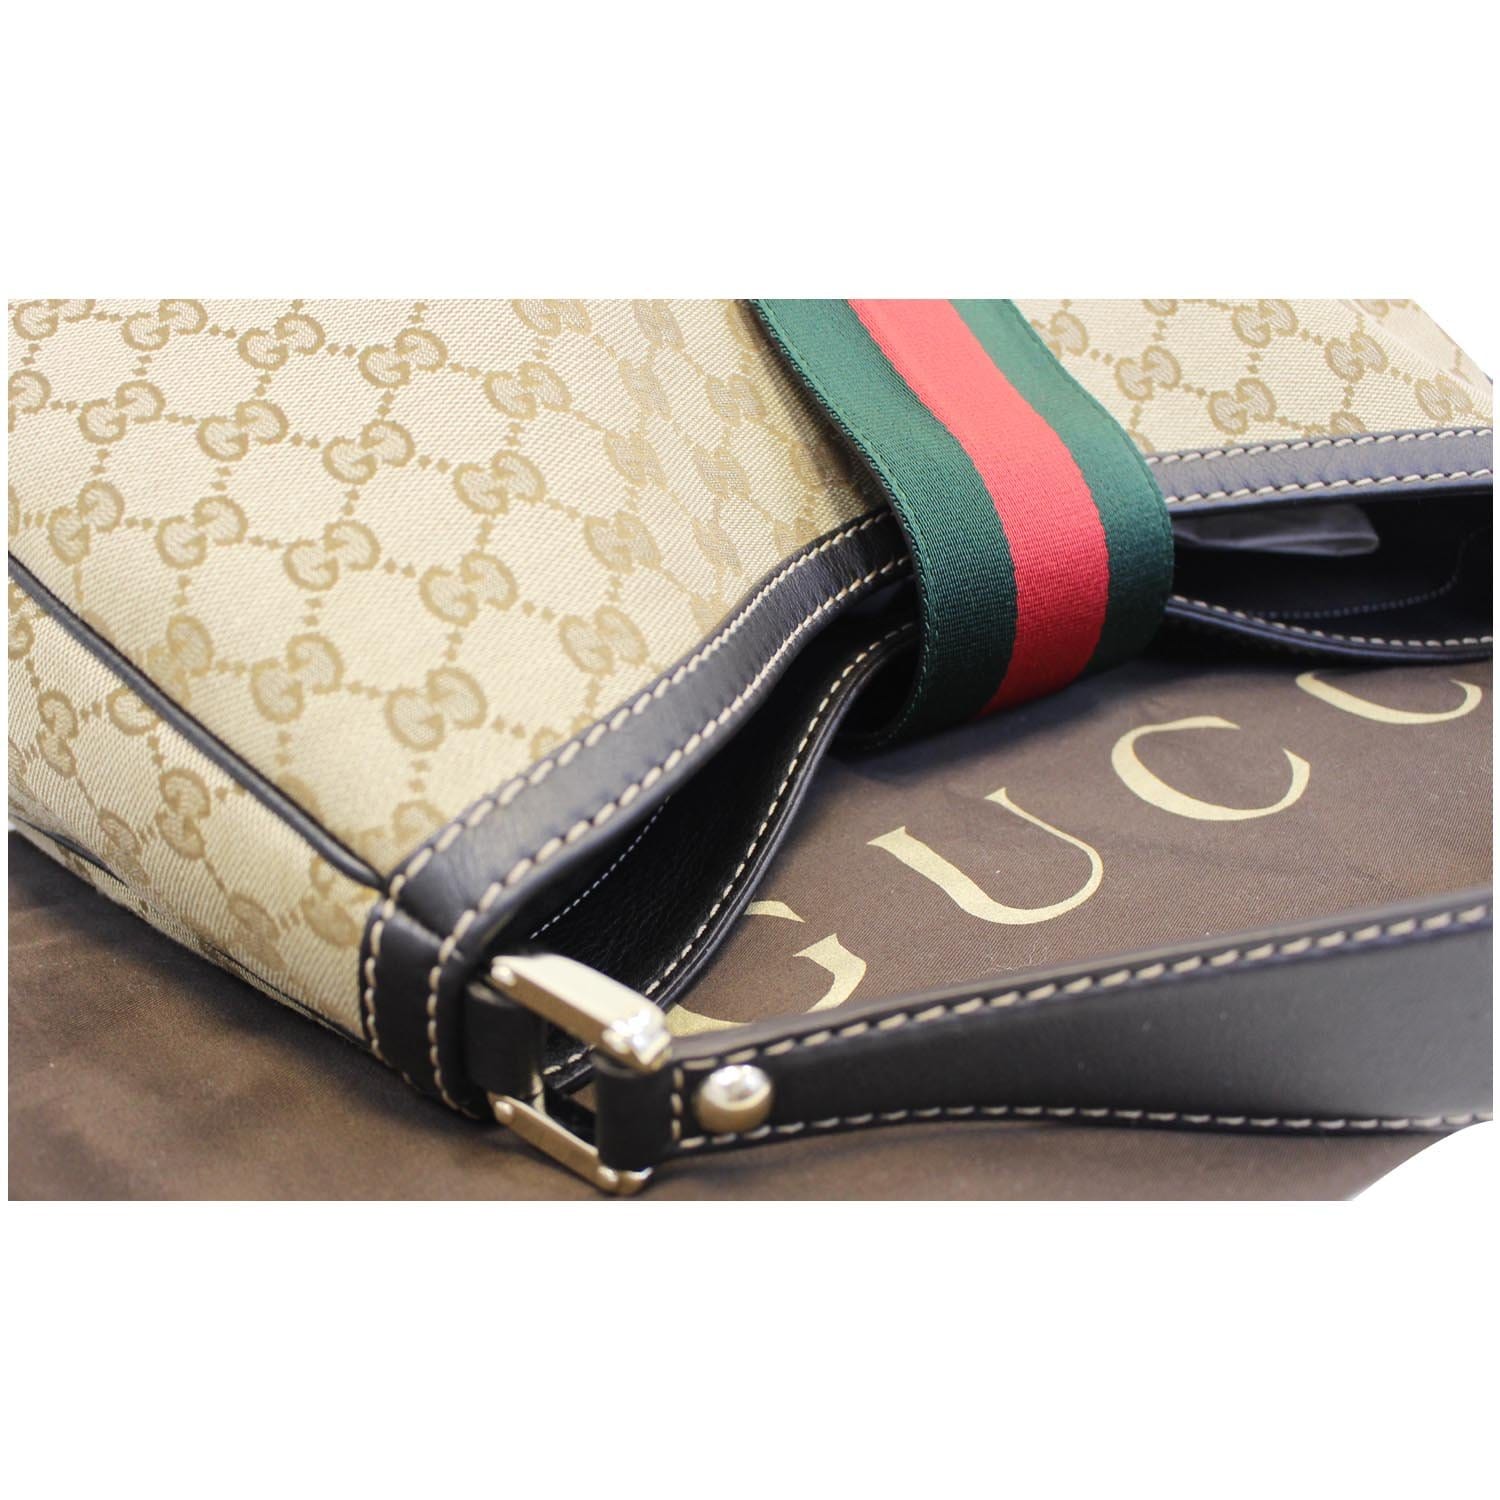 Gucci Large GG Web Leather Hobo Shoulder Bag